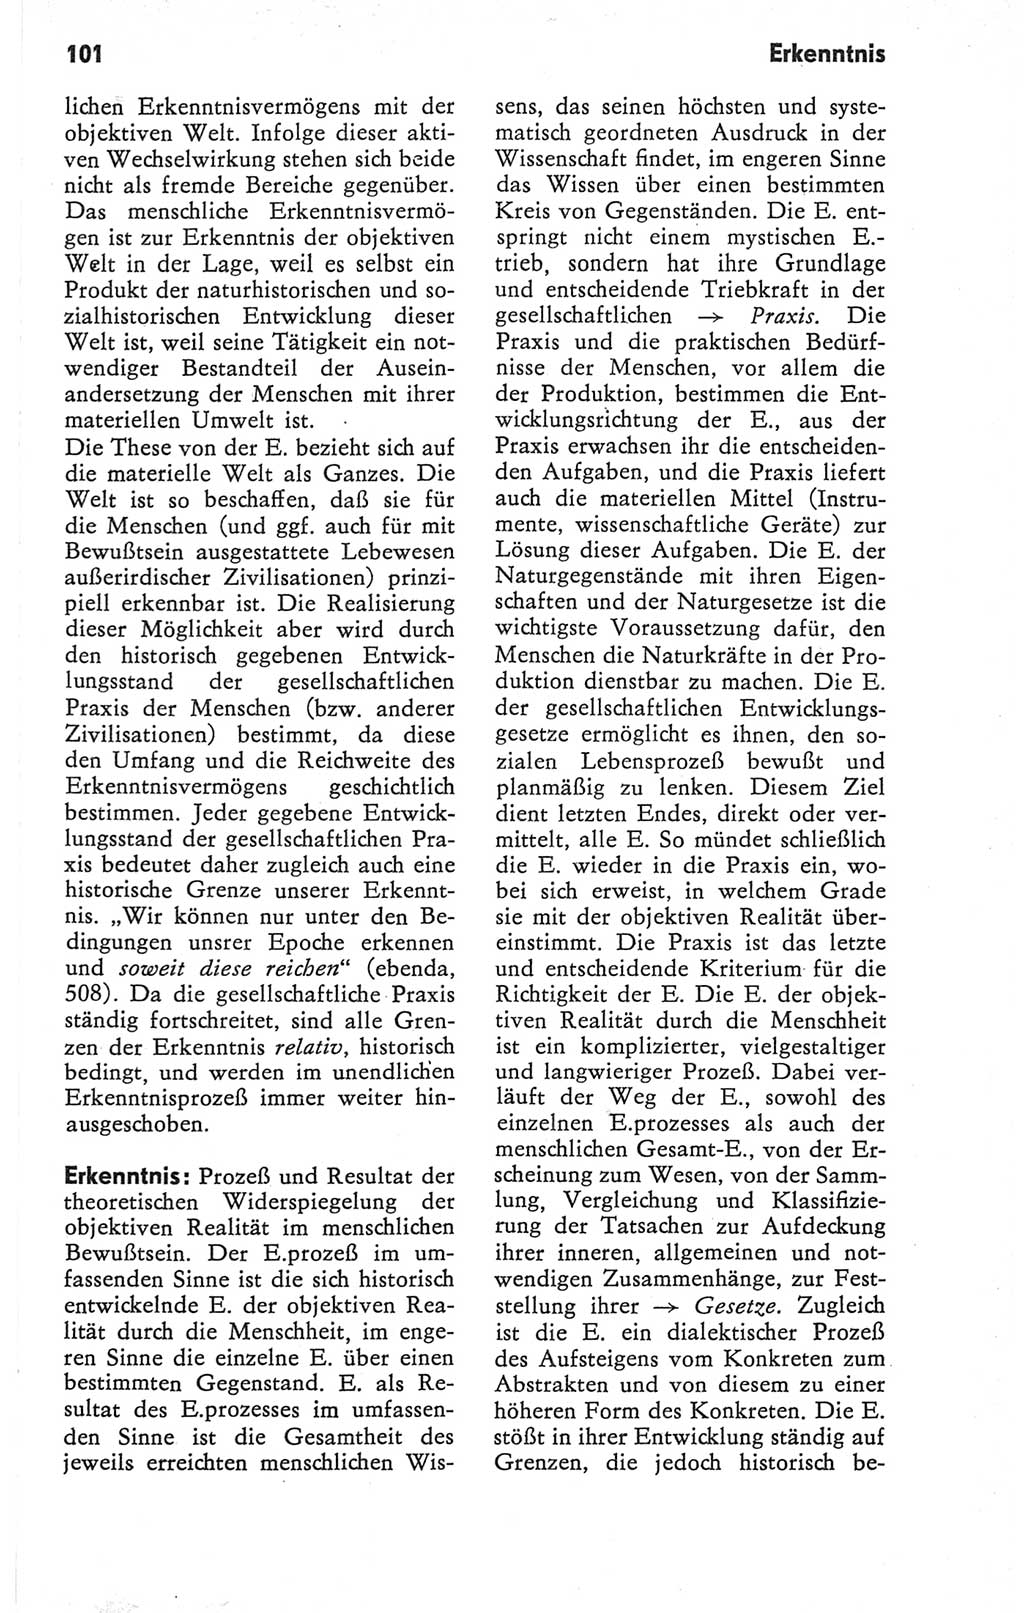 Kleines Wörterbuch der marxistisch-leninistischen Philosophie [Deutsche Demokratische Republik (DDR)] 1979, Seite 101 (Kl. Wb. ML Phil. DDR 1979, S. 101)